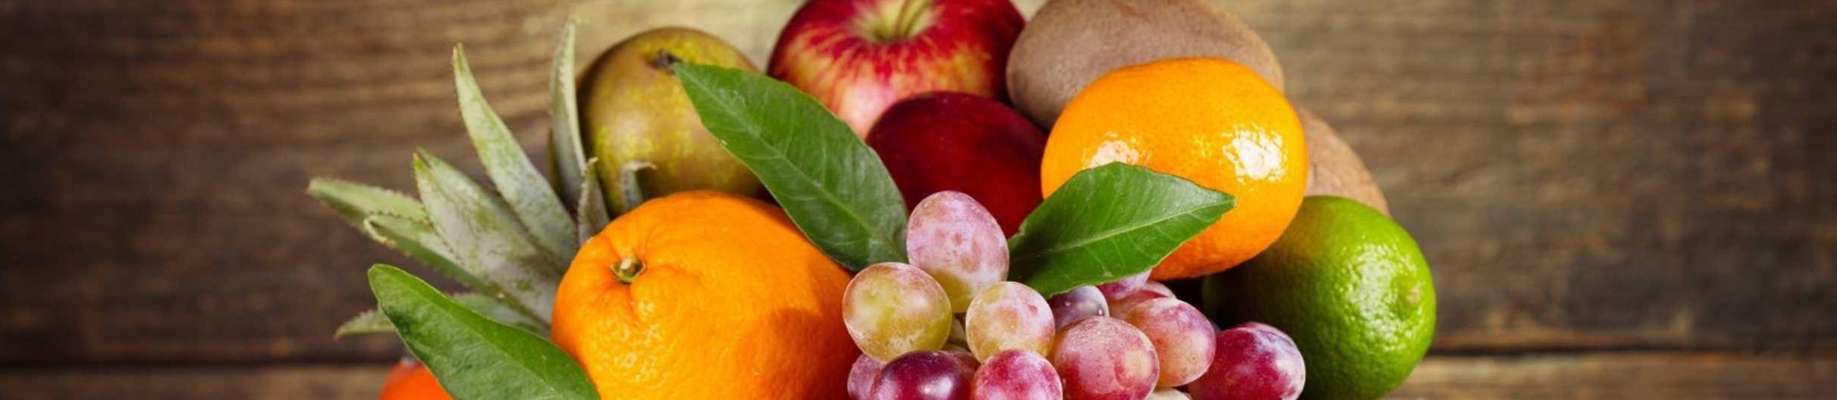 فوایدخوردن میوه های زمستانی